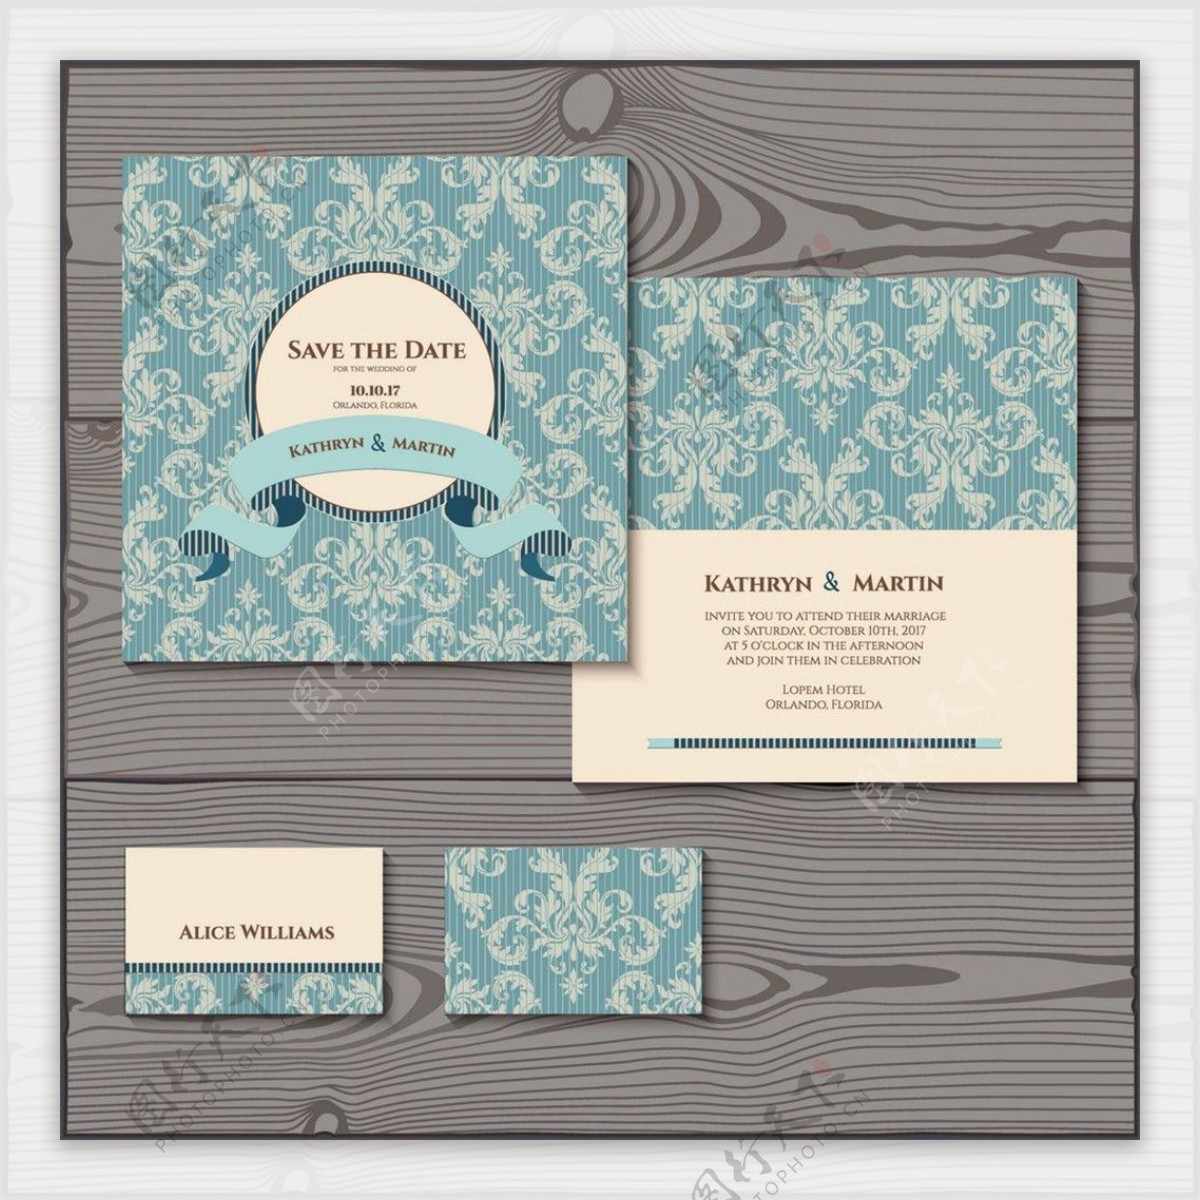 蓝色花纹婚礼卡片图片